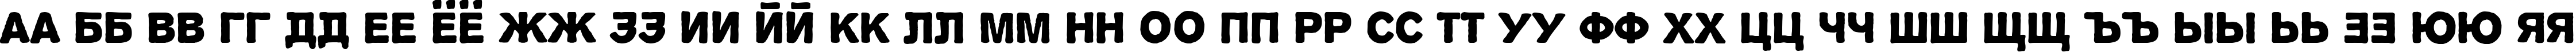 Пример написания русского алфавита шрифтом Propaganda